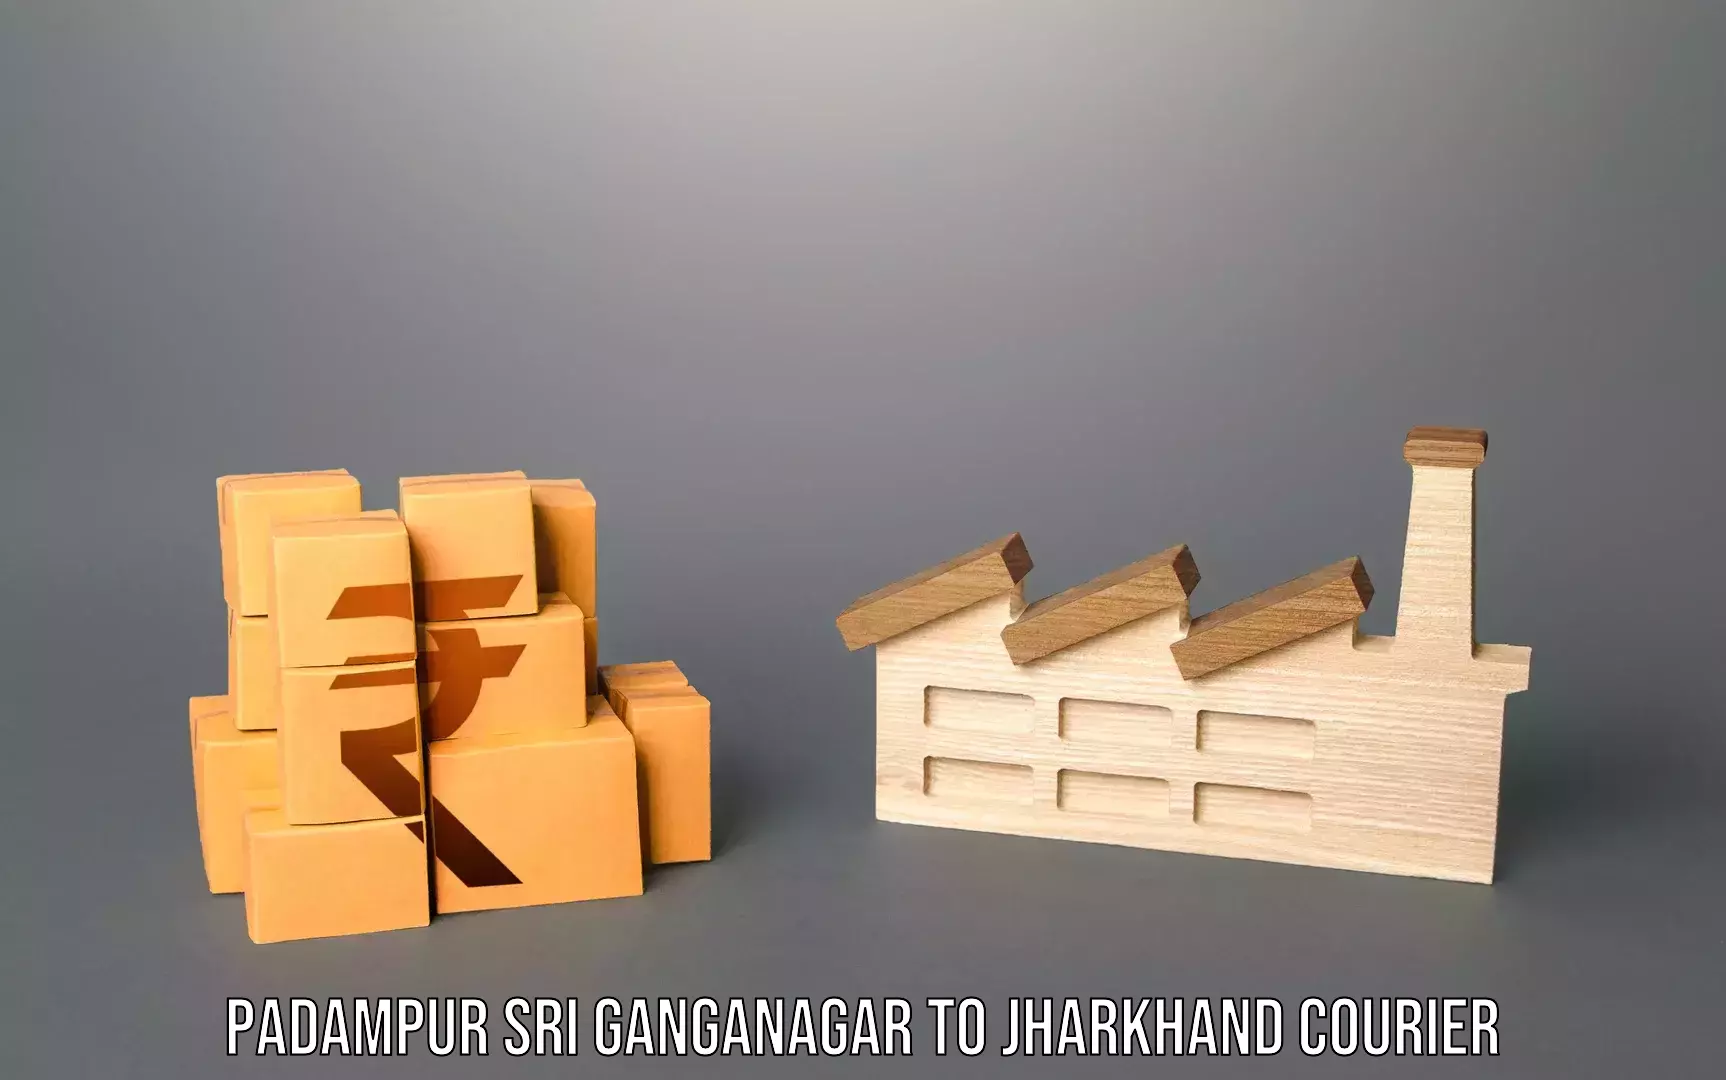 Personal baggage courier Padampur Sri Ganganagar to Padma Hazaribagh